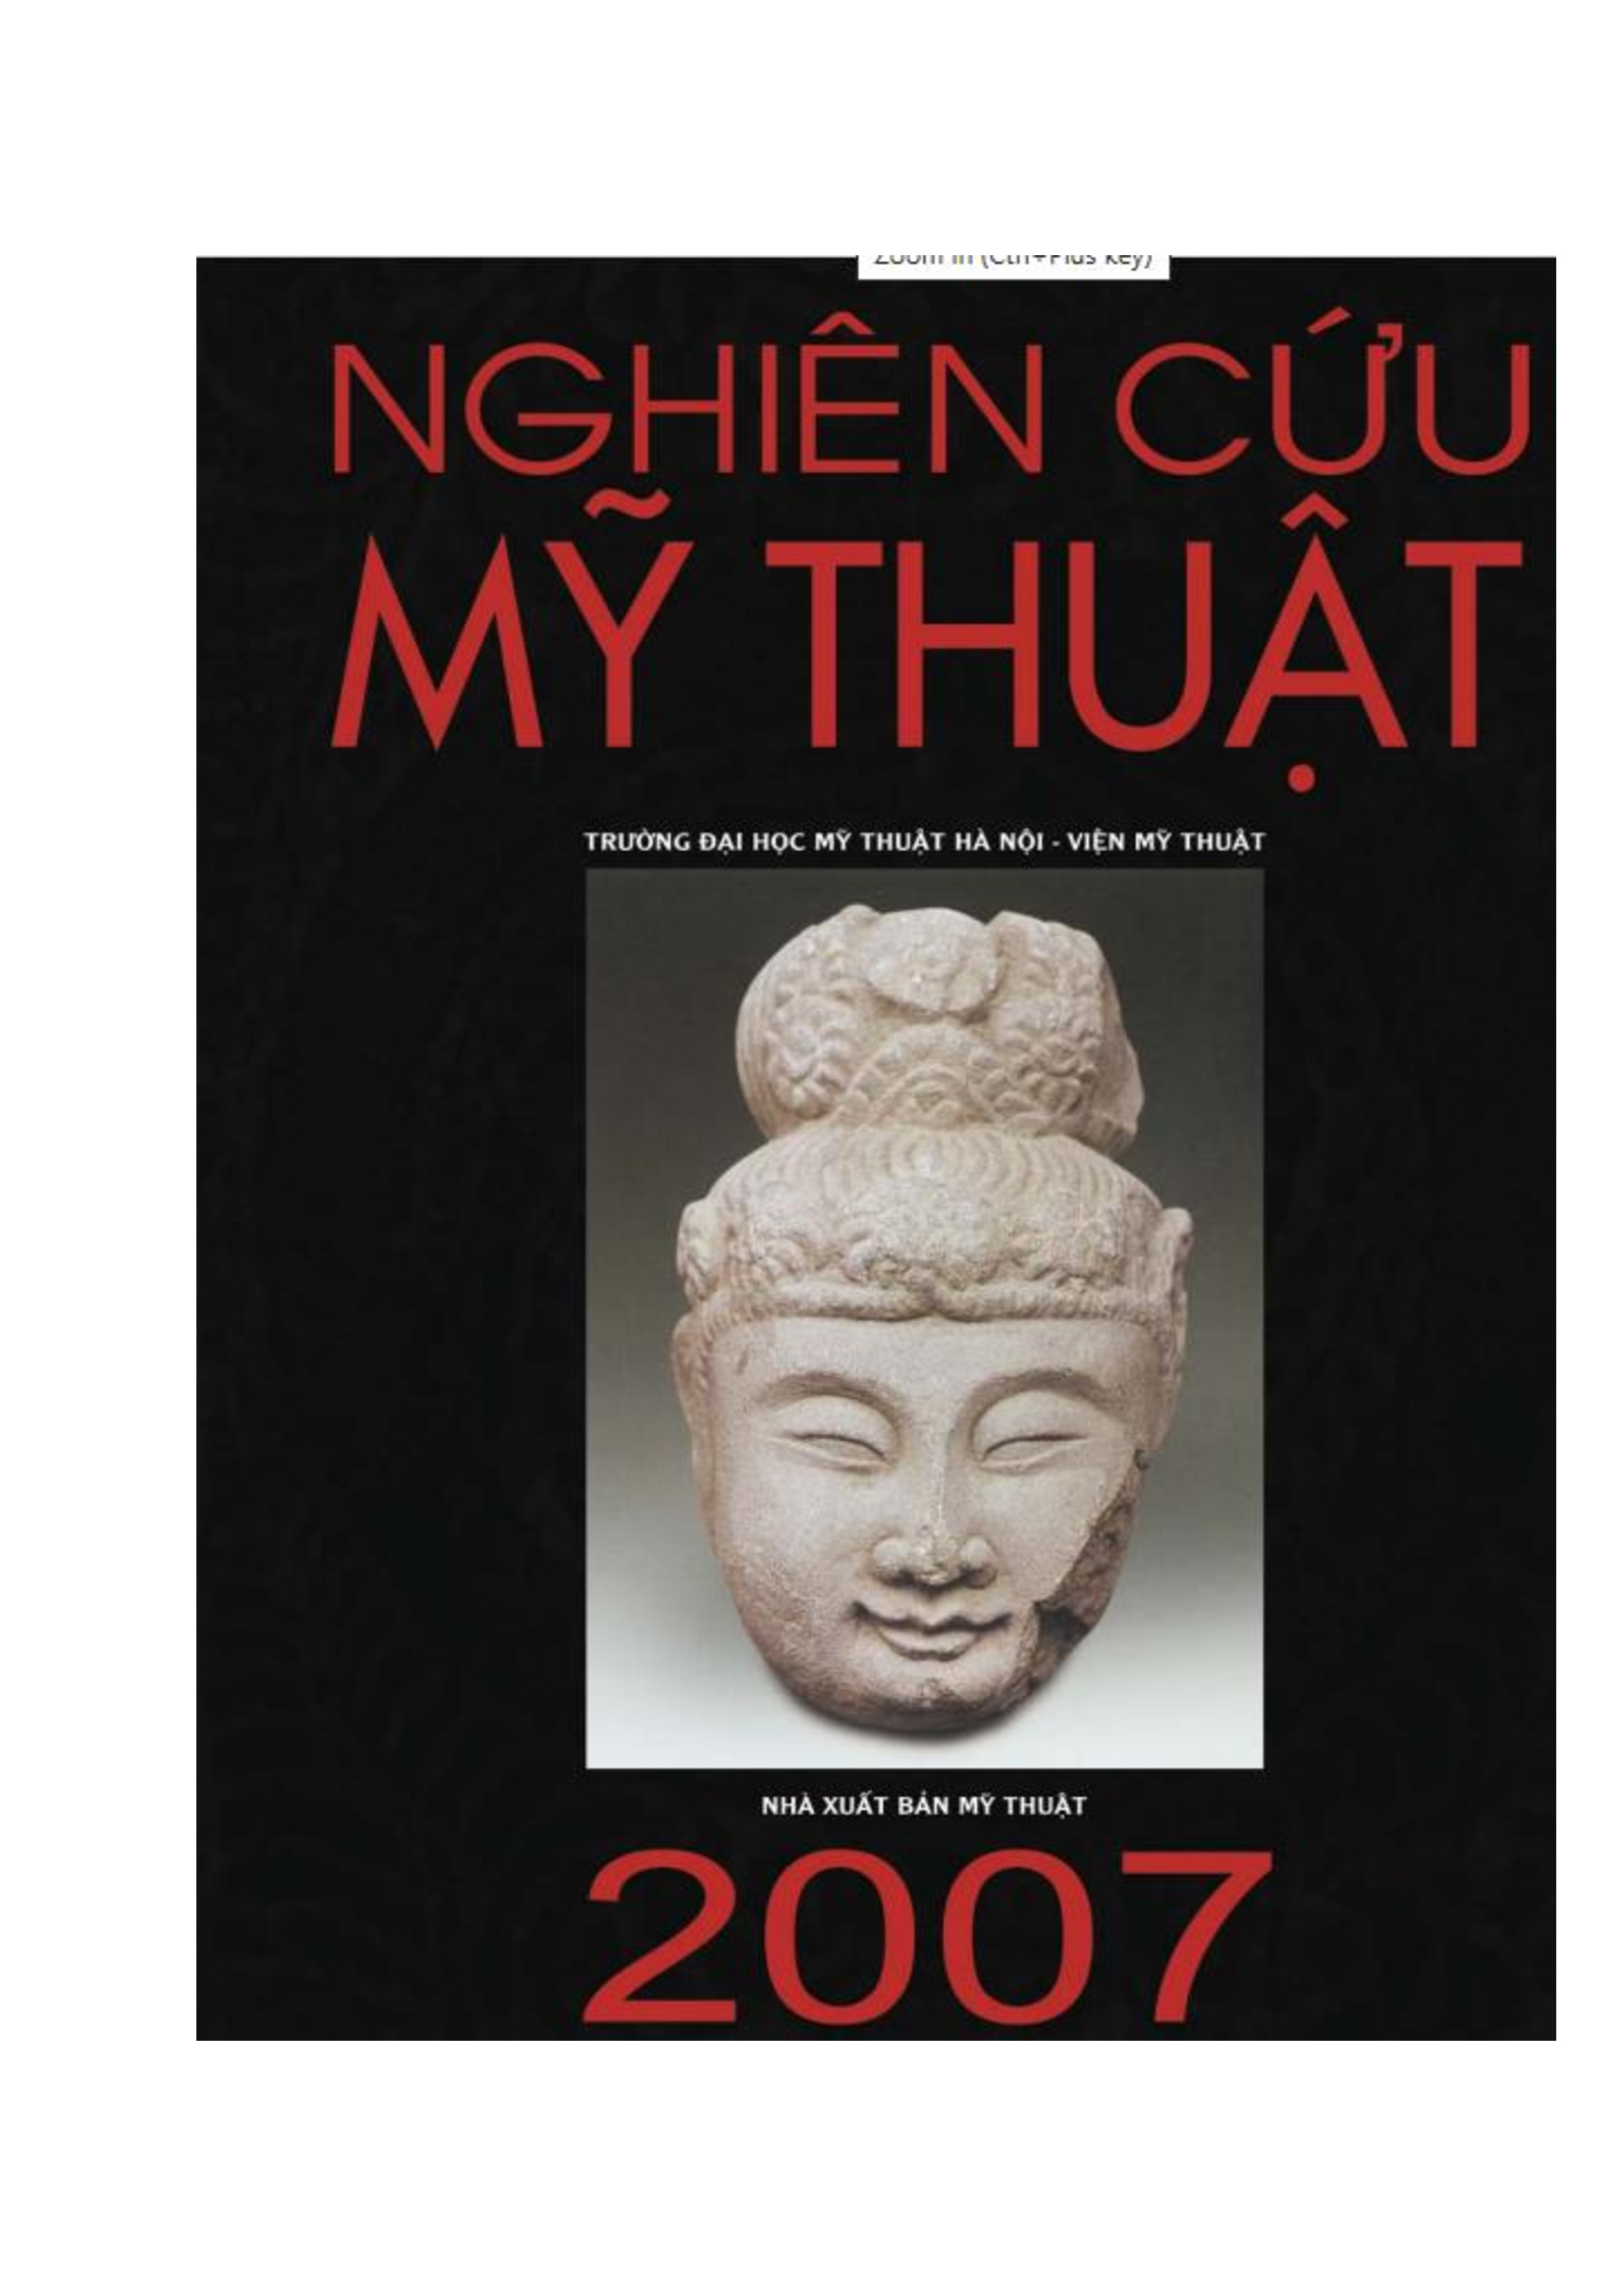 Chúa Nguyễn và vương triều Nguyễn trong lịch sử Việt Nam từ thế kỷ XVI đến thế kỷ XIX.